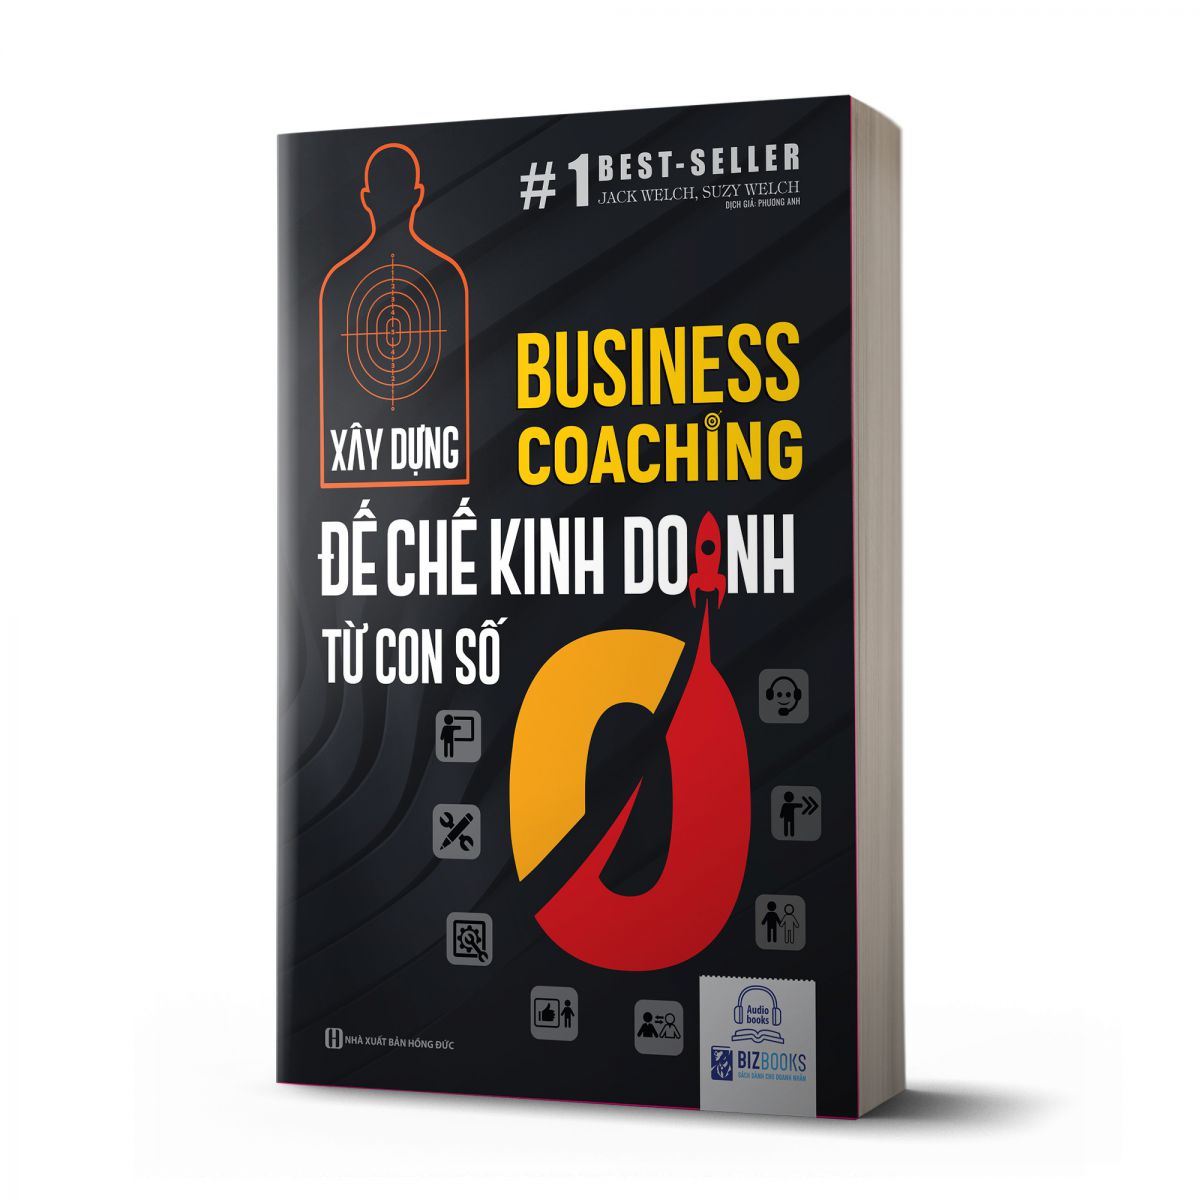 Business Coaching - Xây dựng đế chế kinh doanh từ con số 0 1